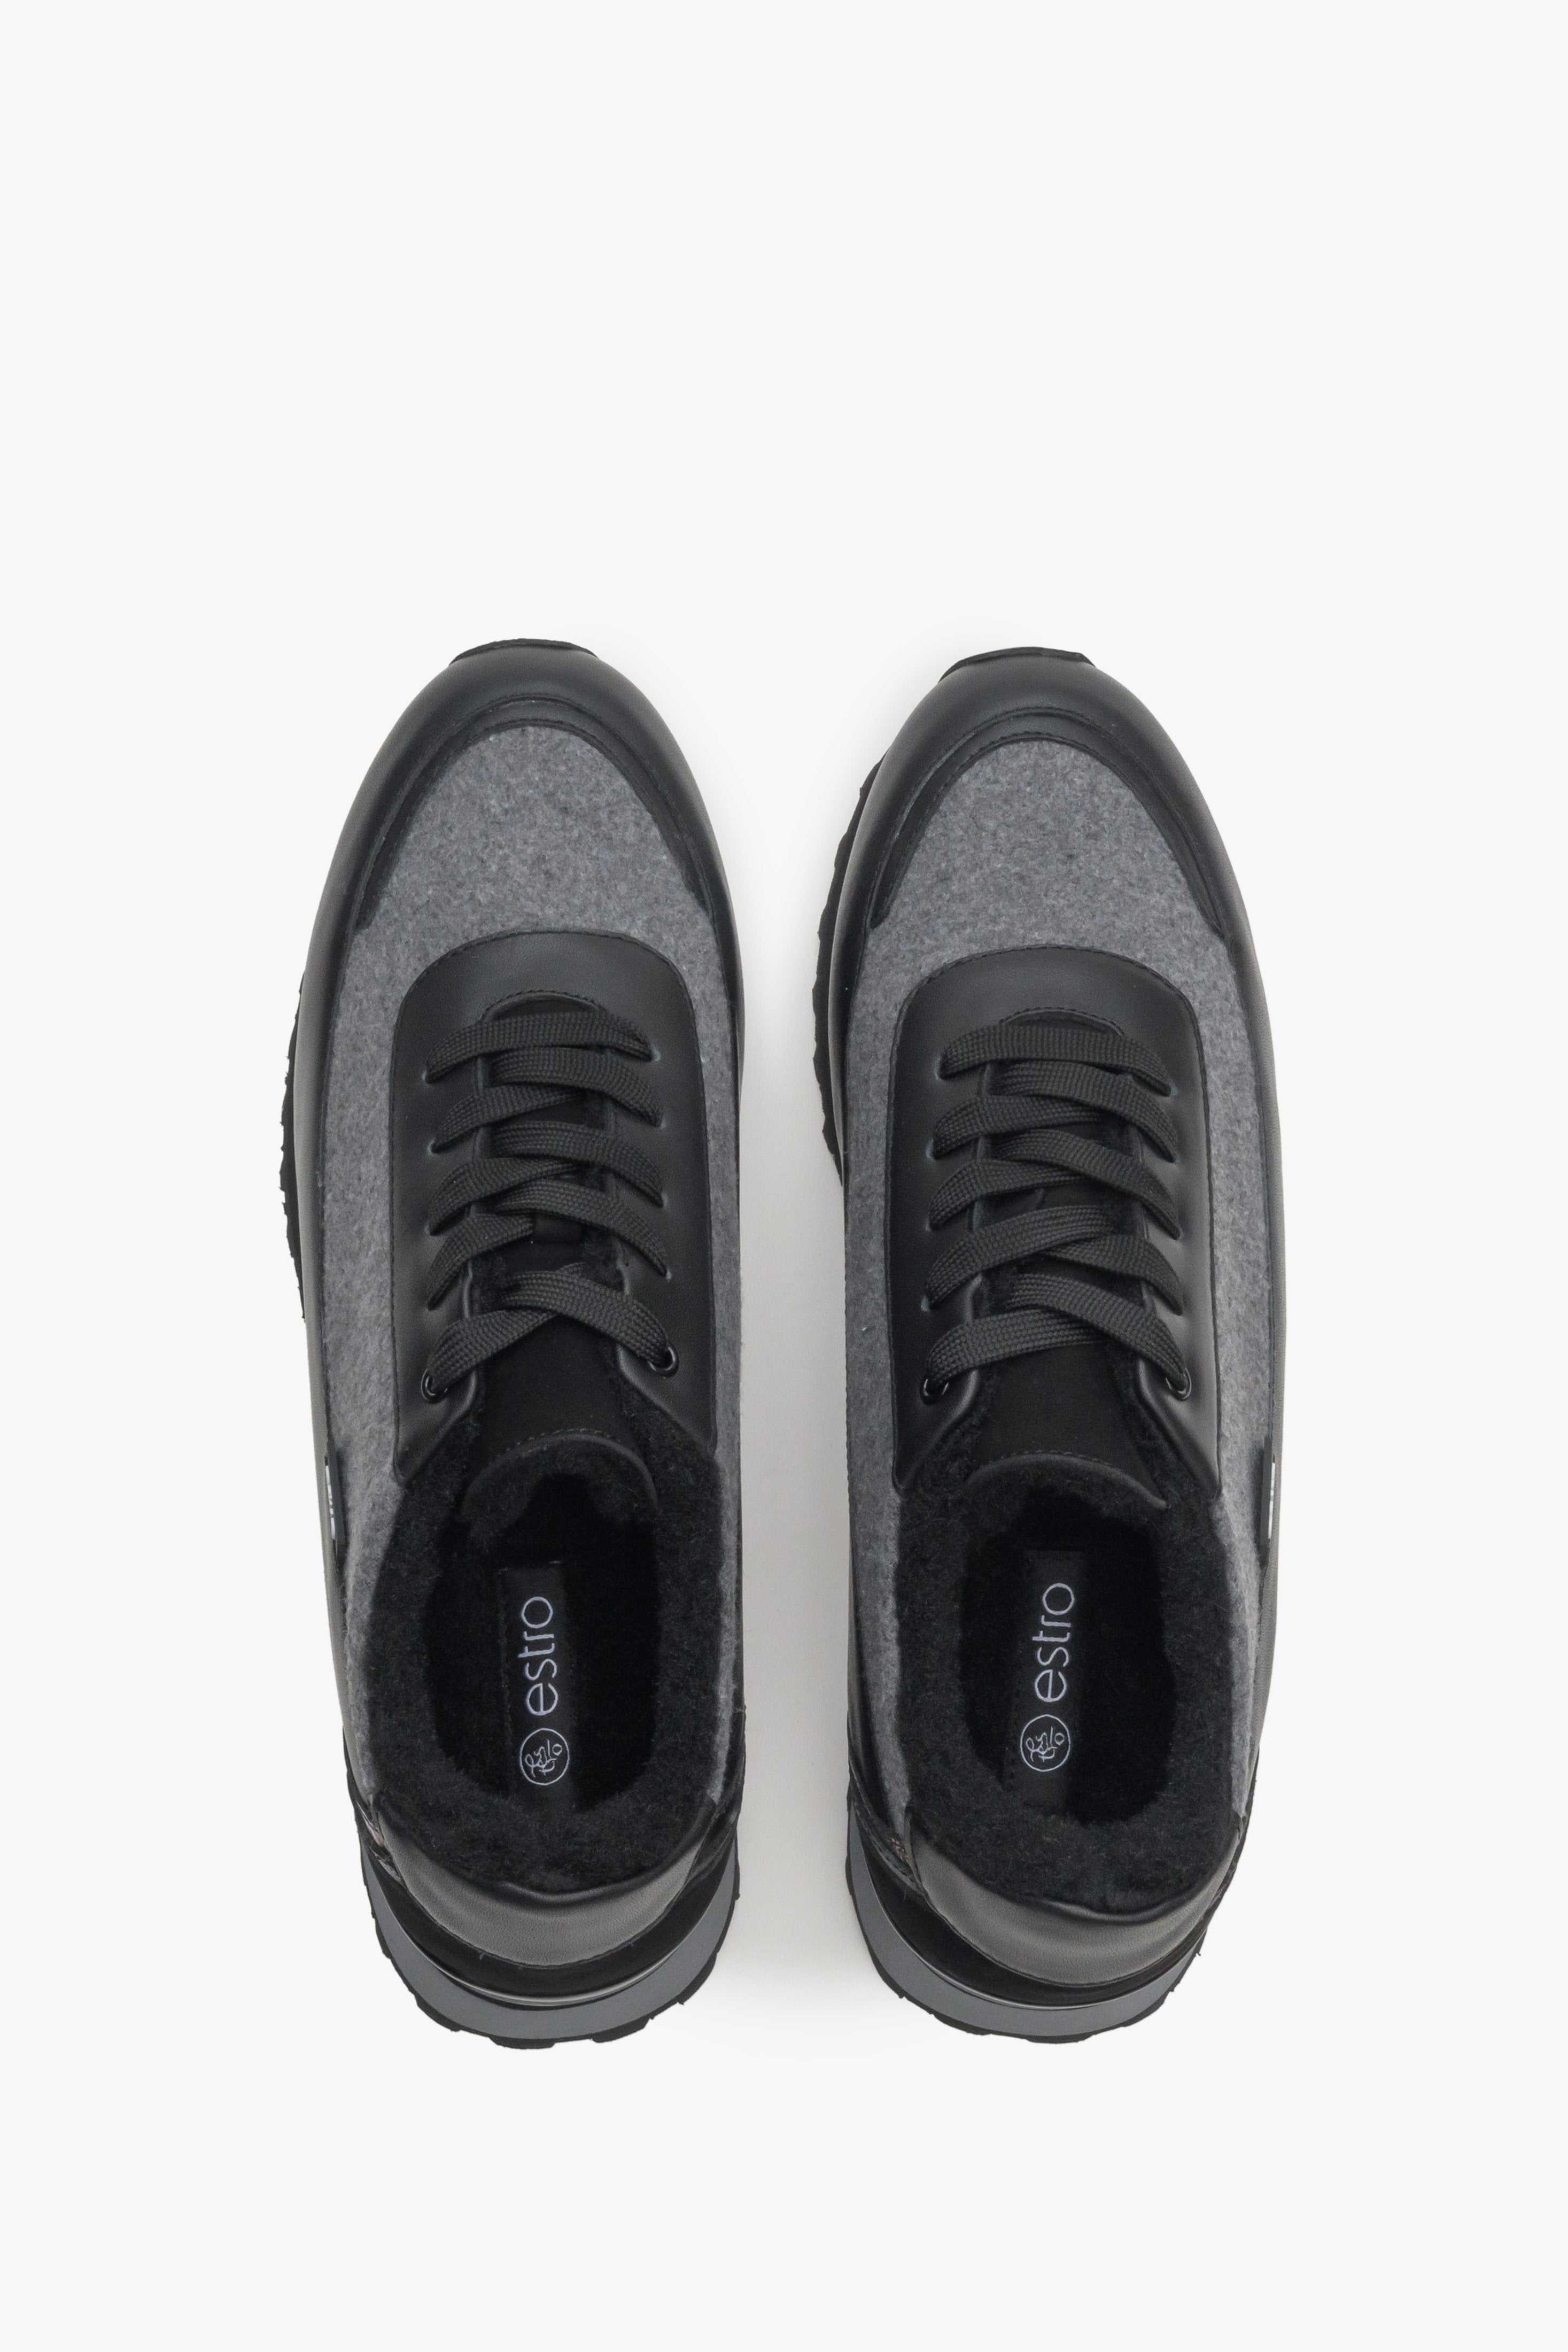 Czarno-szare skórzano-tekstylne sneakersy damskie z ociepleniem Estro - prezentacja modelu z góry.